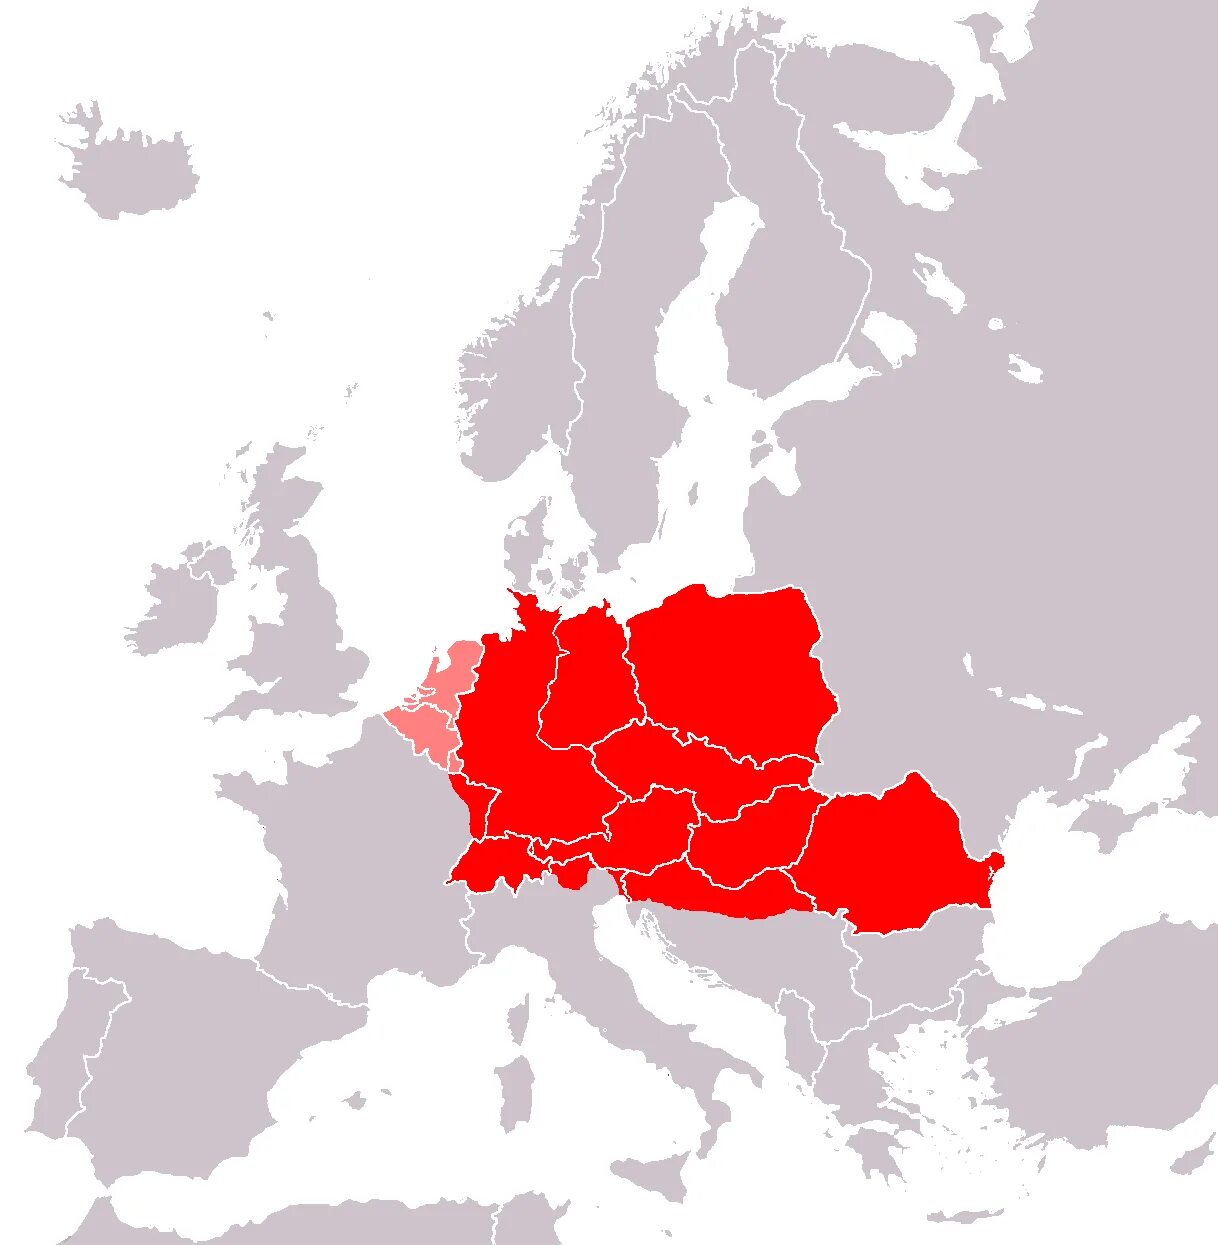 Центральная Европа. Страны центральной Европы. Регионы центральной Европы. Районы центральной Европы. Центральный европеец